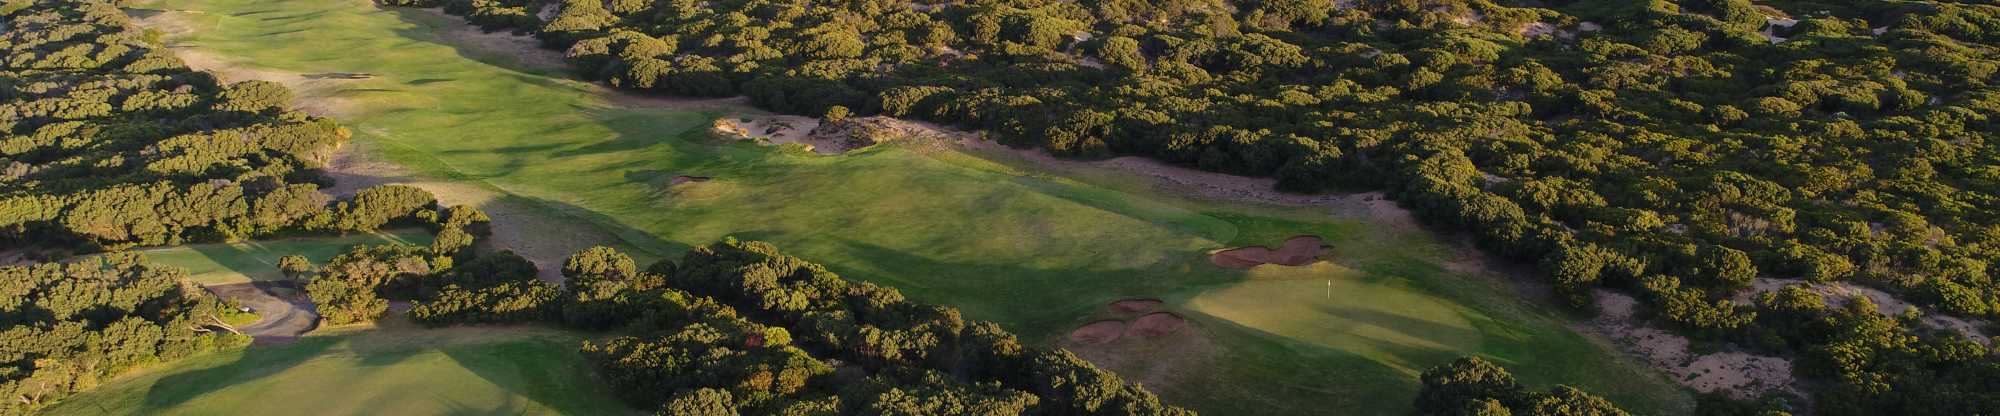 13th Beach Golf Links aerial shot